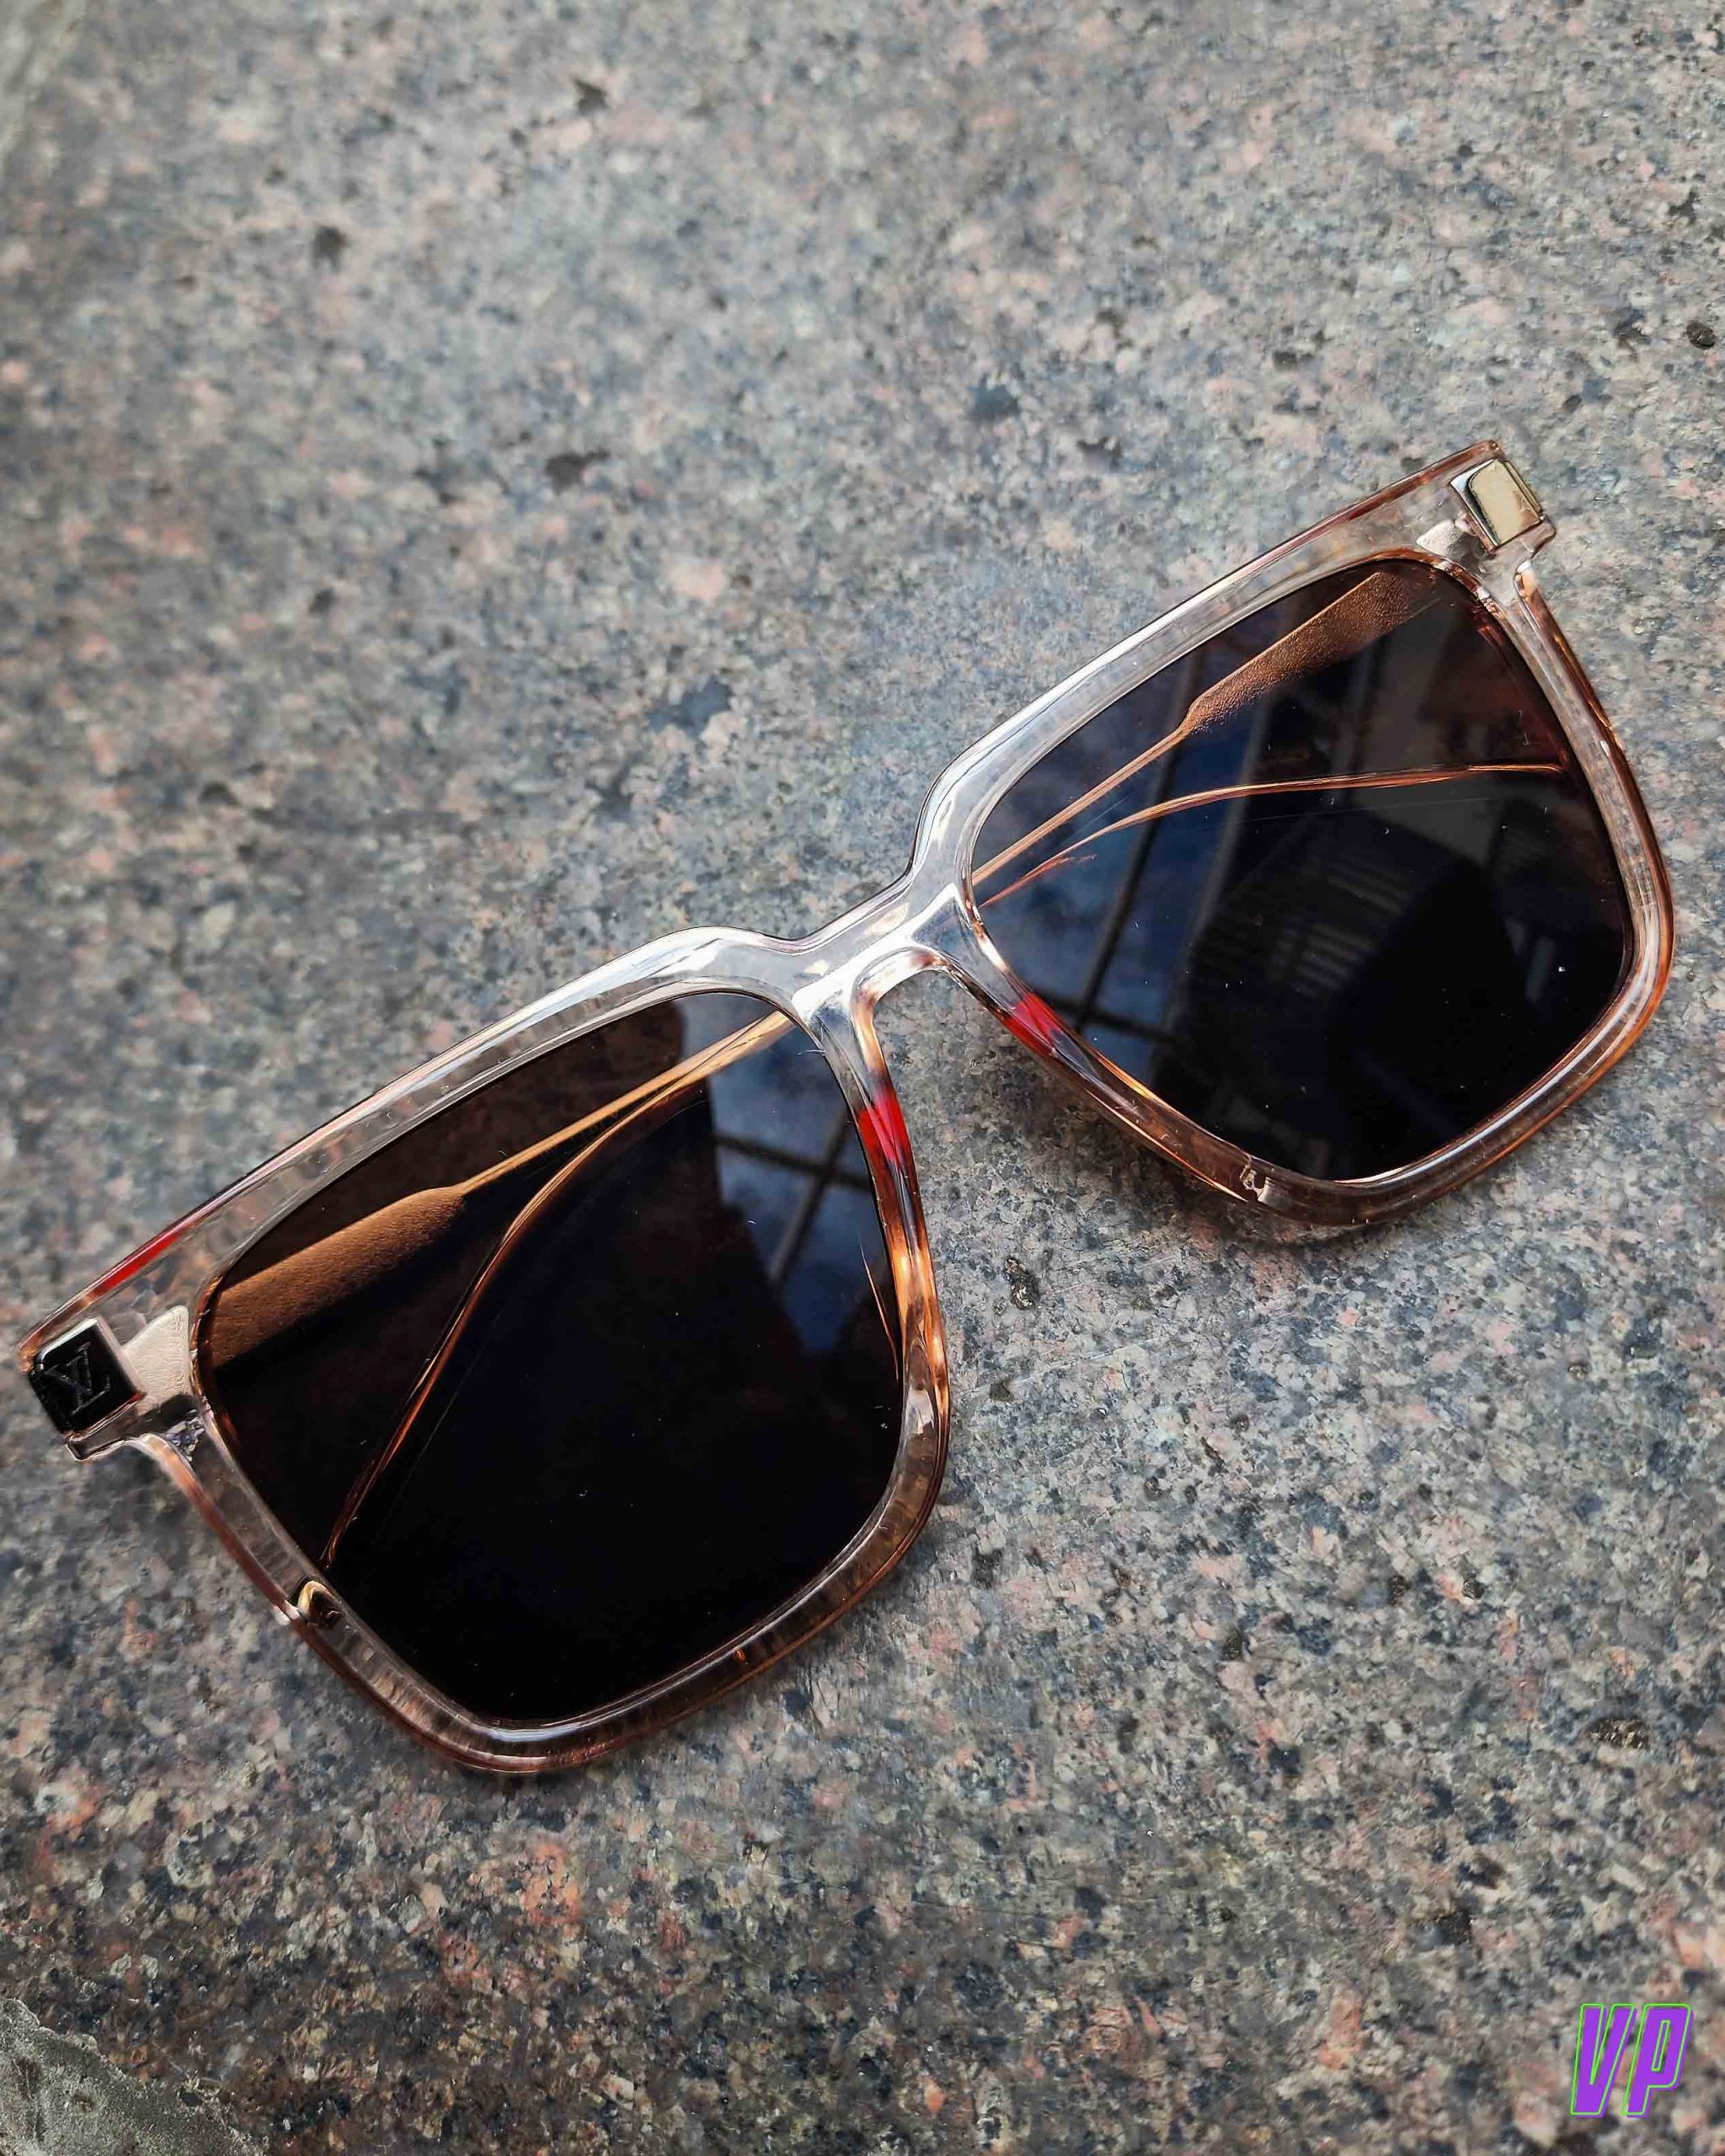 Louis Vuitton LV Rise Square Sunglasses Transparent - Men